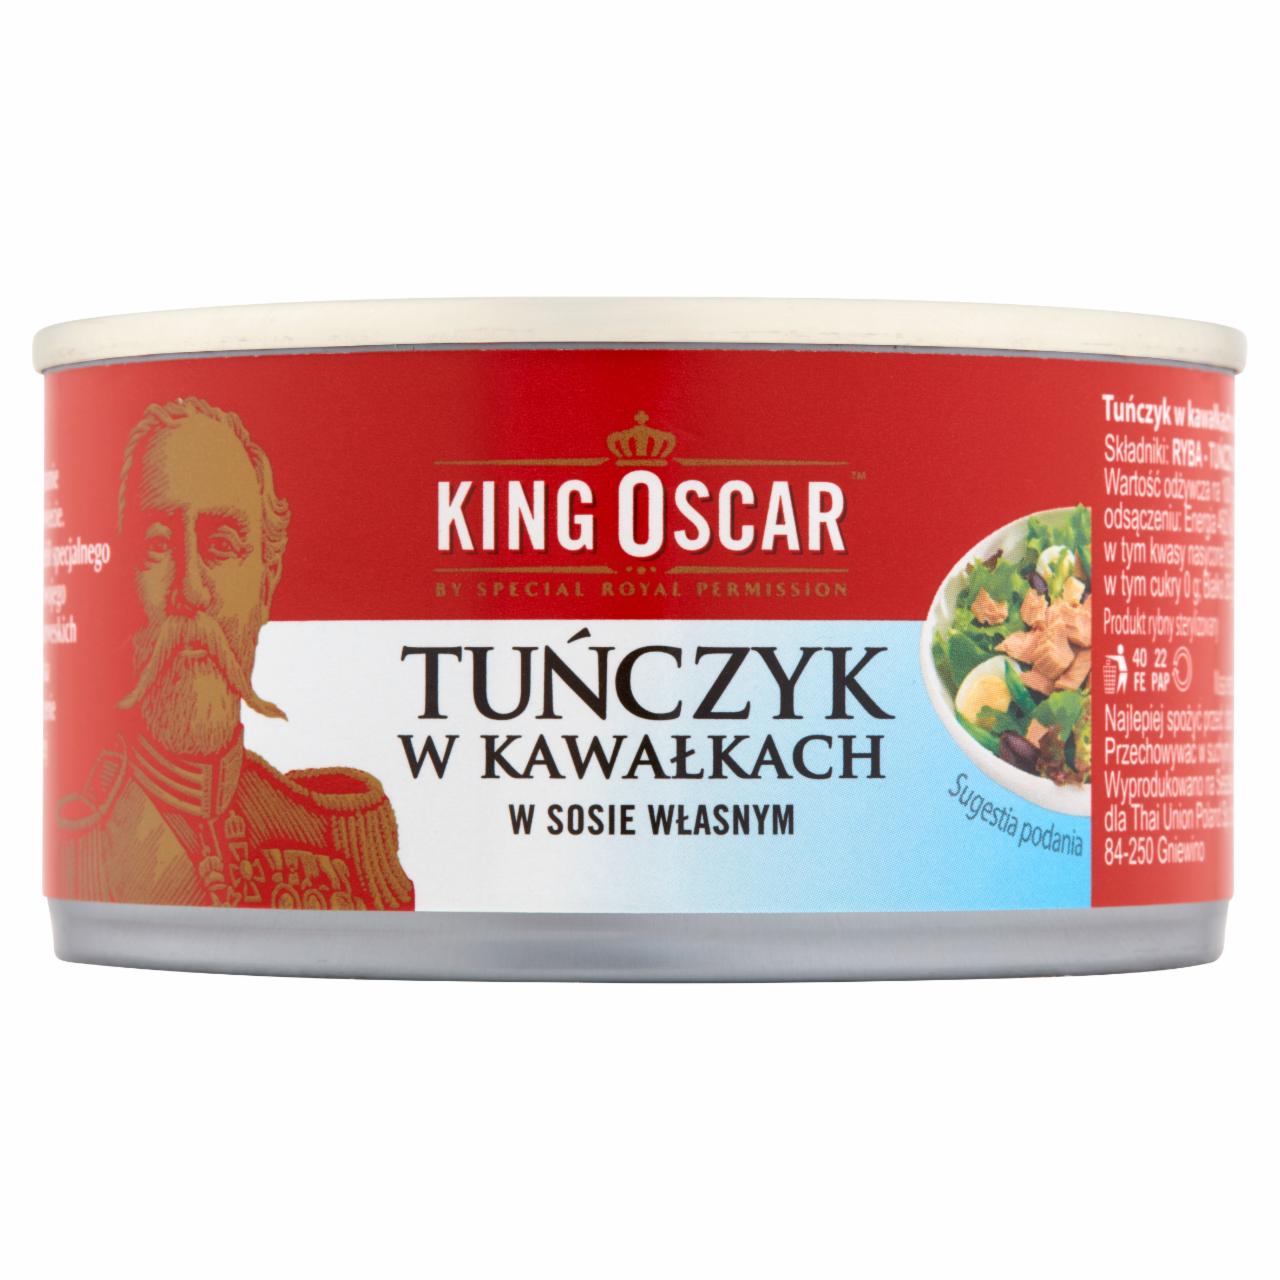 Zdjęcia - King Oscar Tuńczyk w kawałkach w sosie własnym 170 g